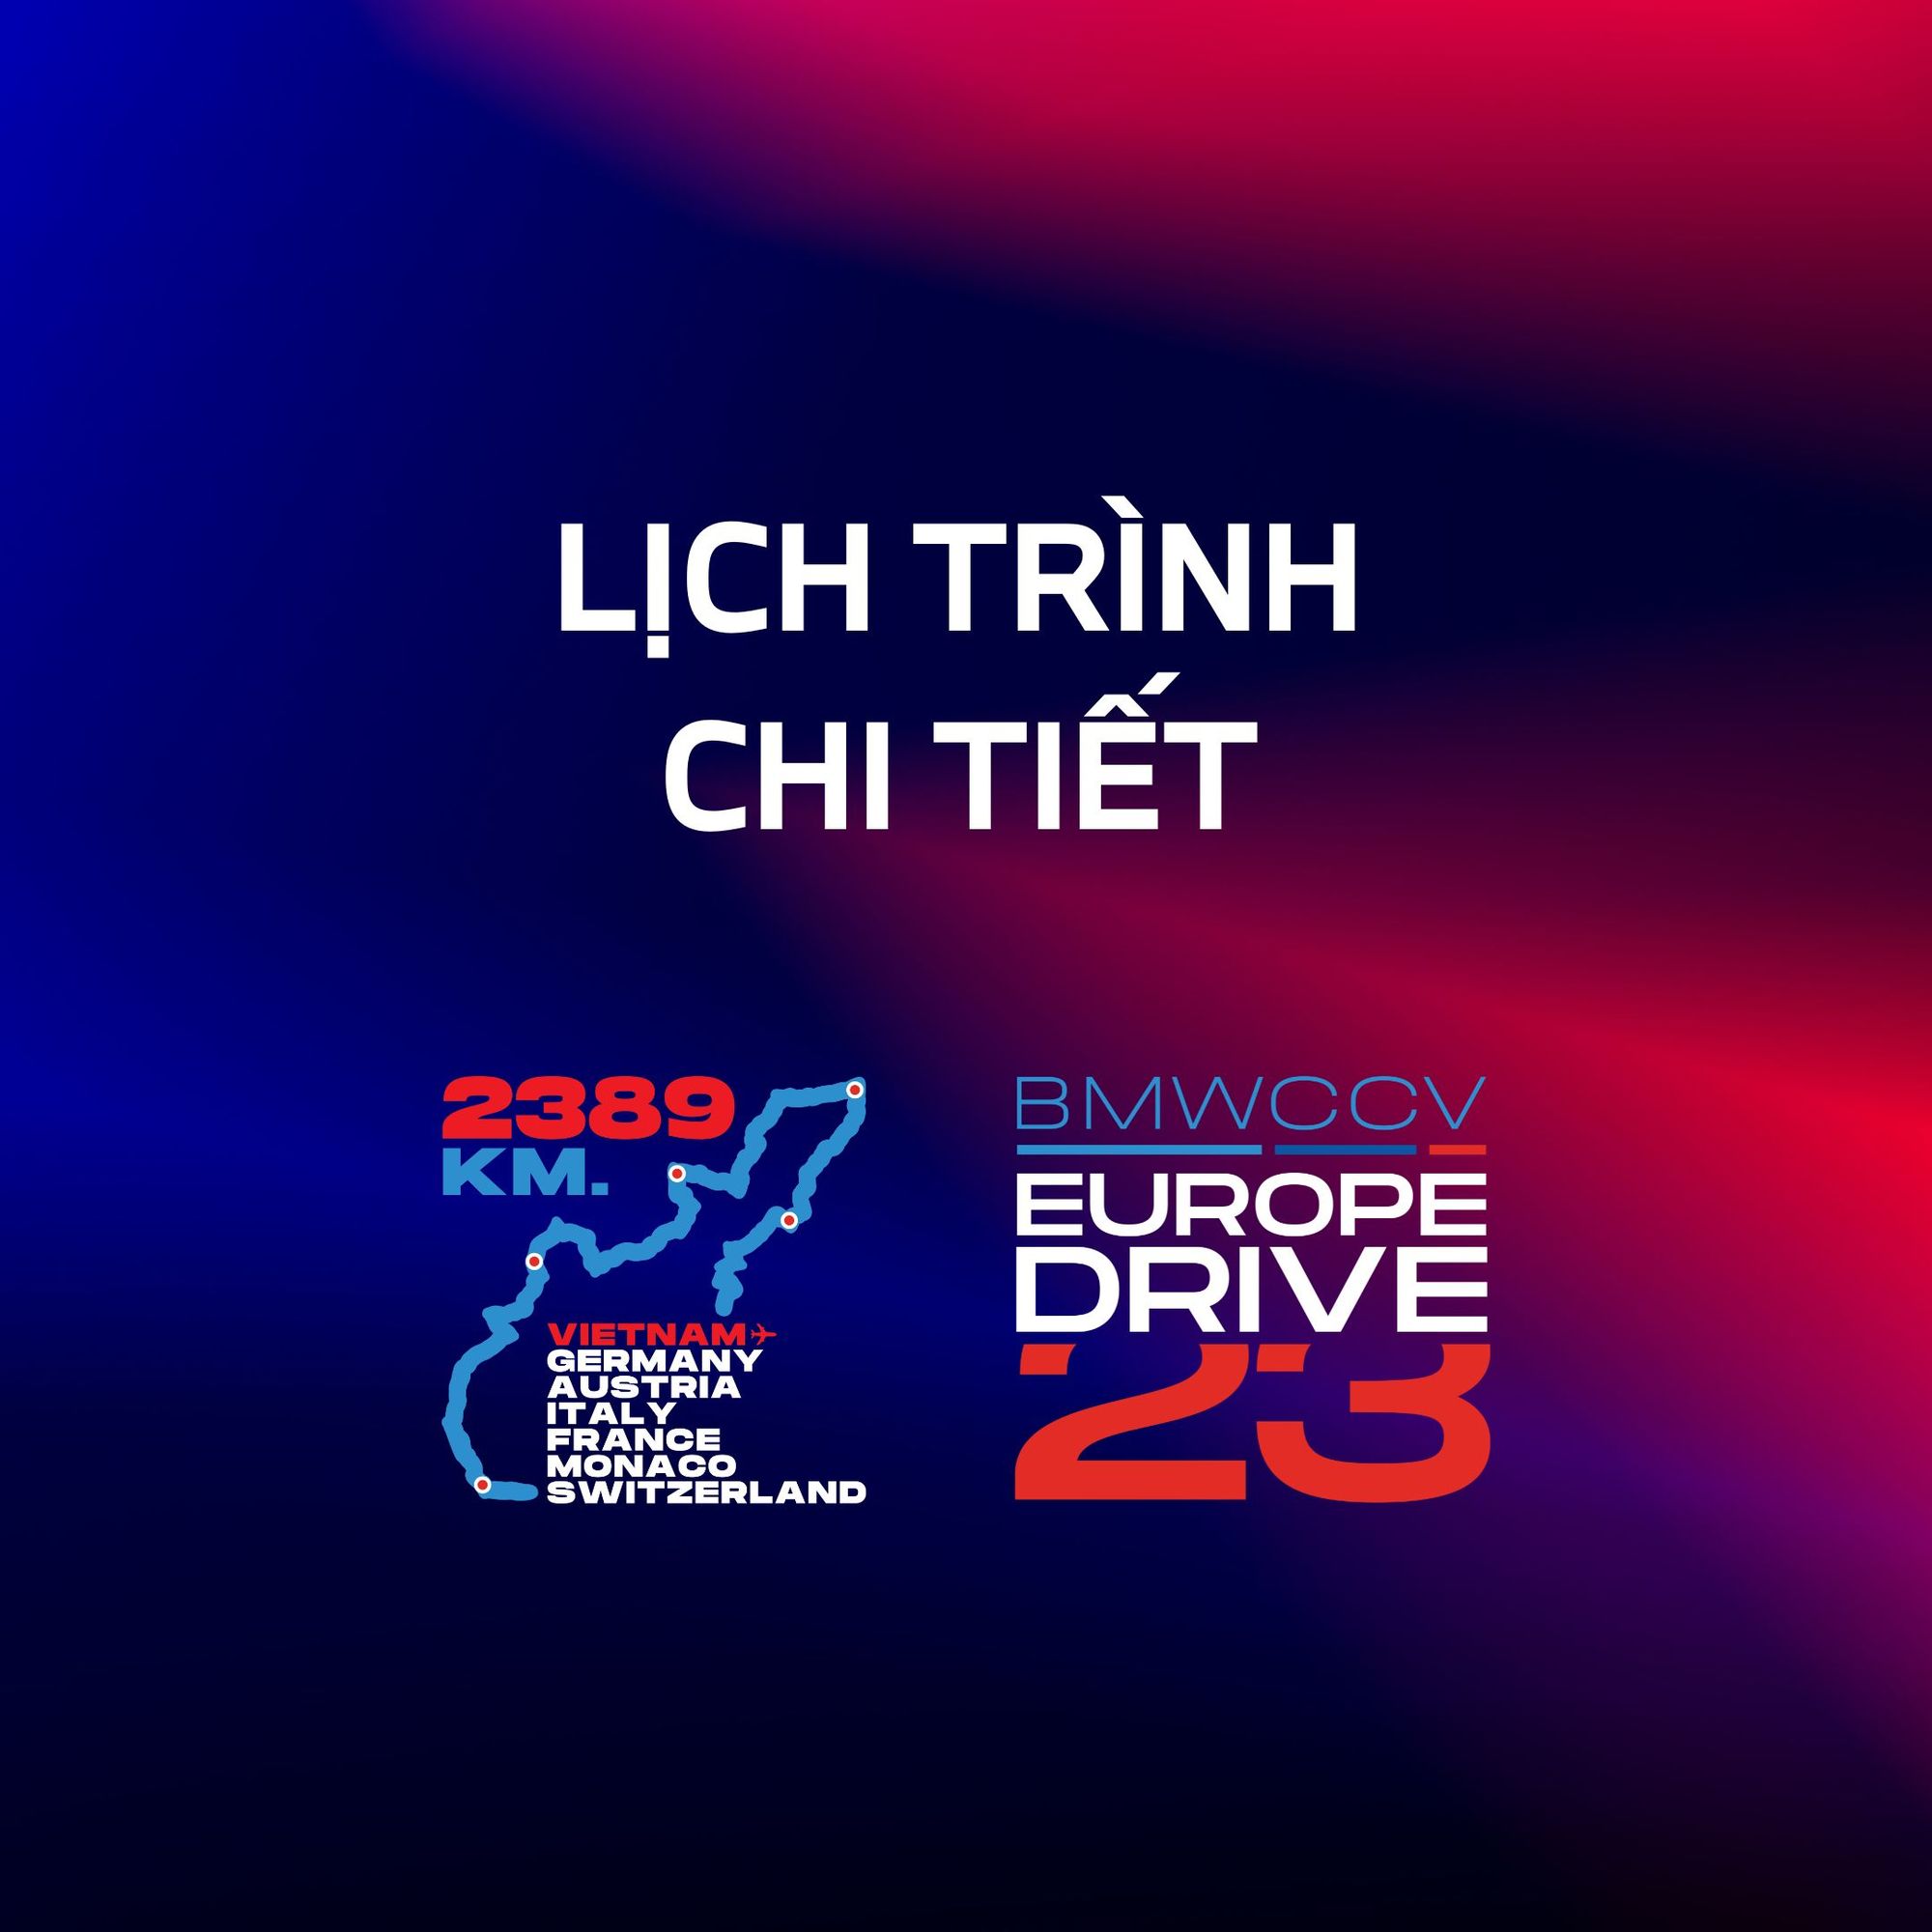 Lịch trình chi tiết của chương trình BMWCCV Europe Drive 2023